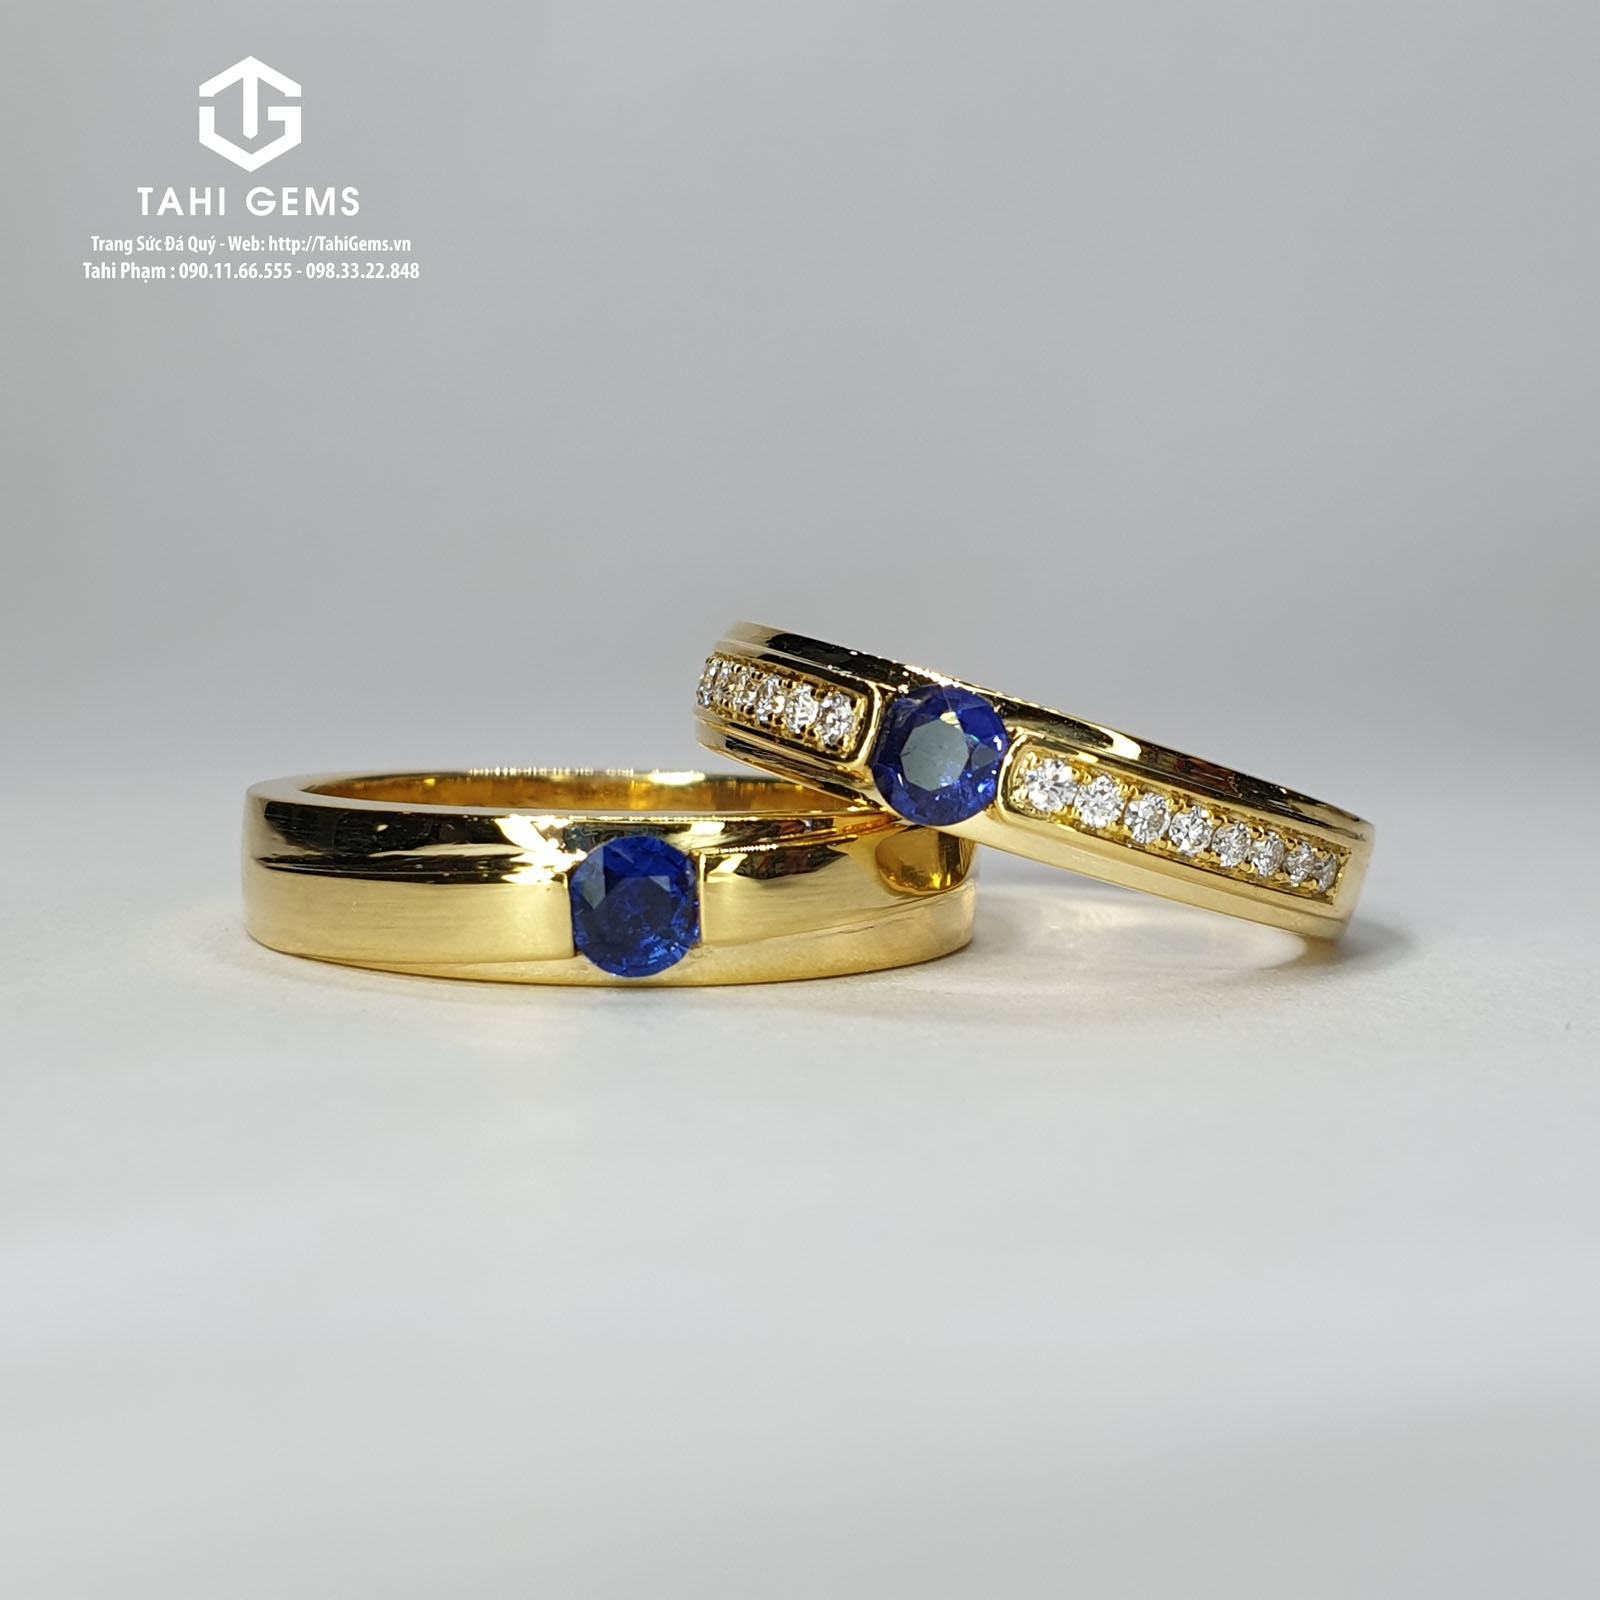 Ý nghĩa của nhẫn cưới thiết kế nhà TahiGems - Tổng hợp mẫu nhẫn cưới